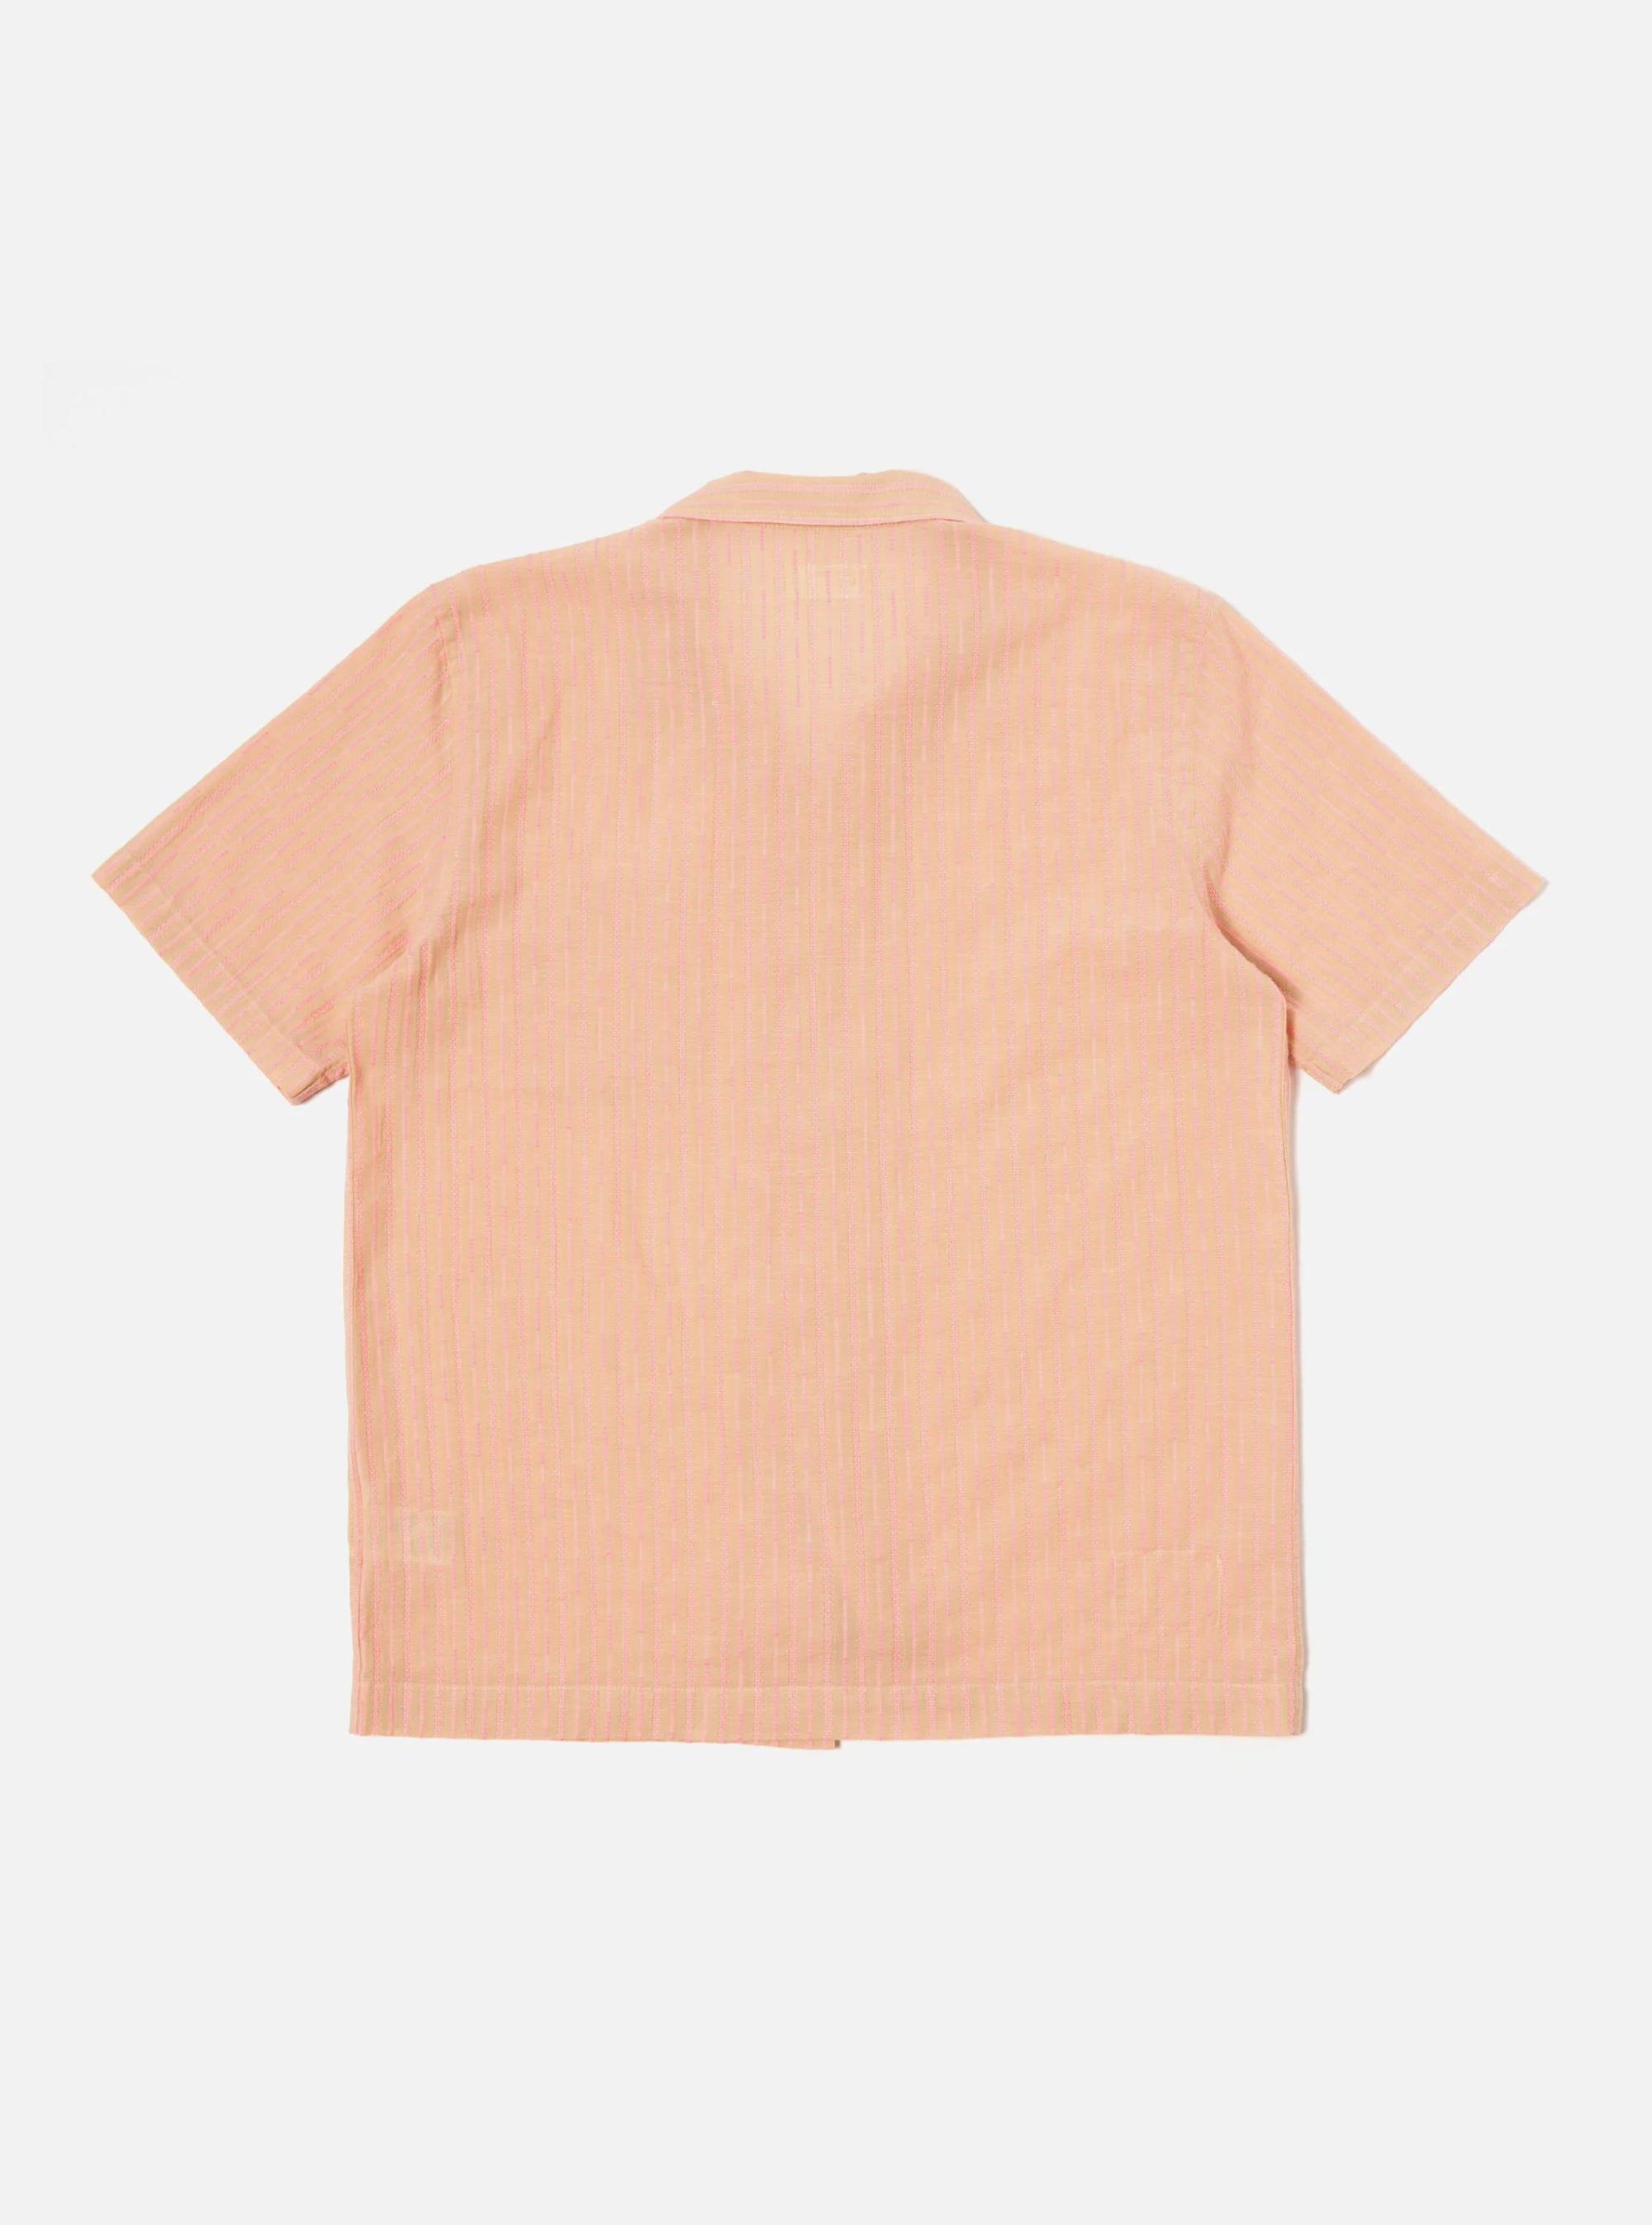 Road Shirt - Beige/Pink Fluro Cotton